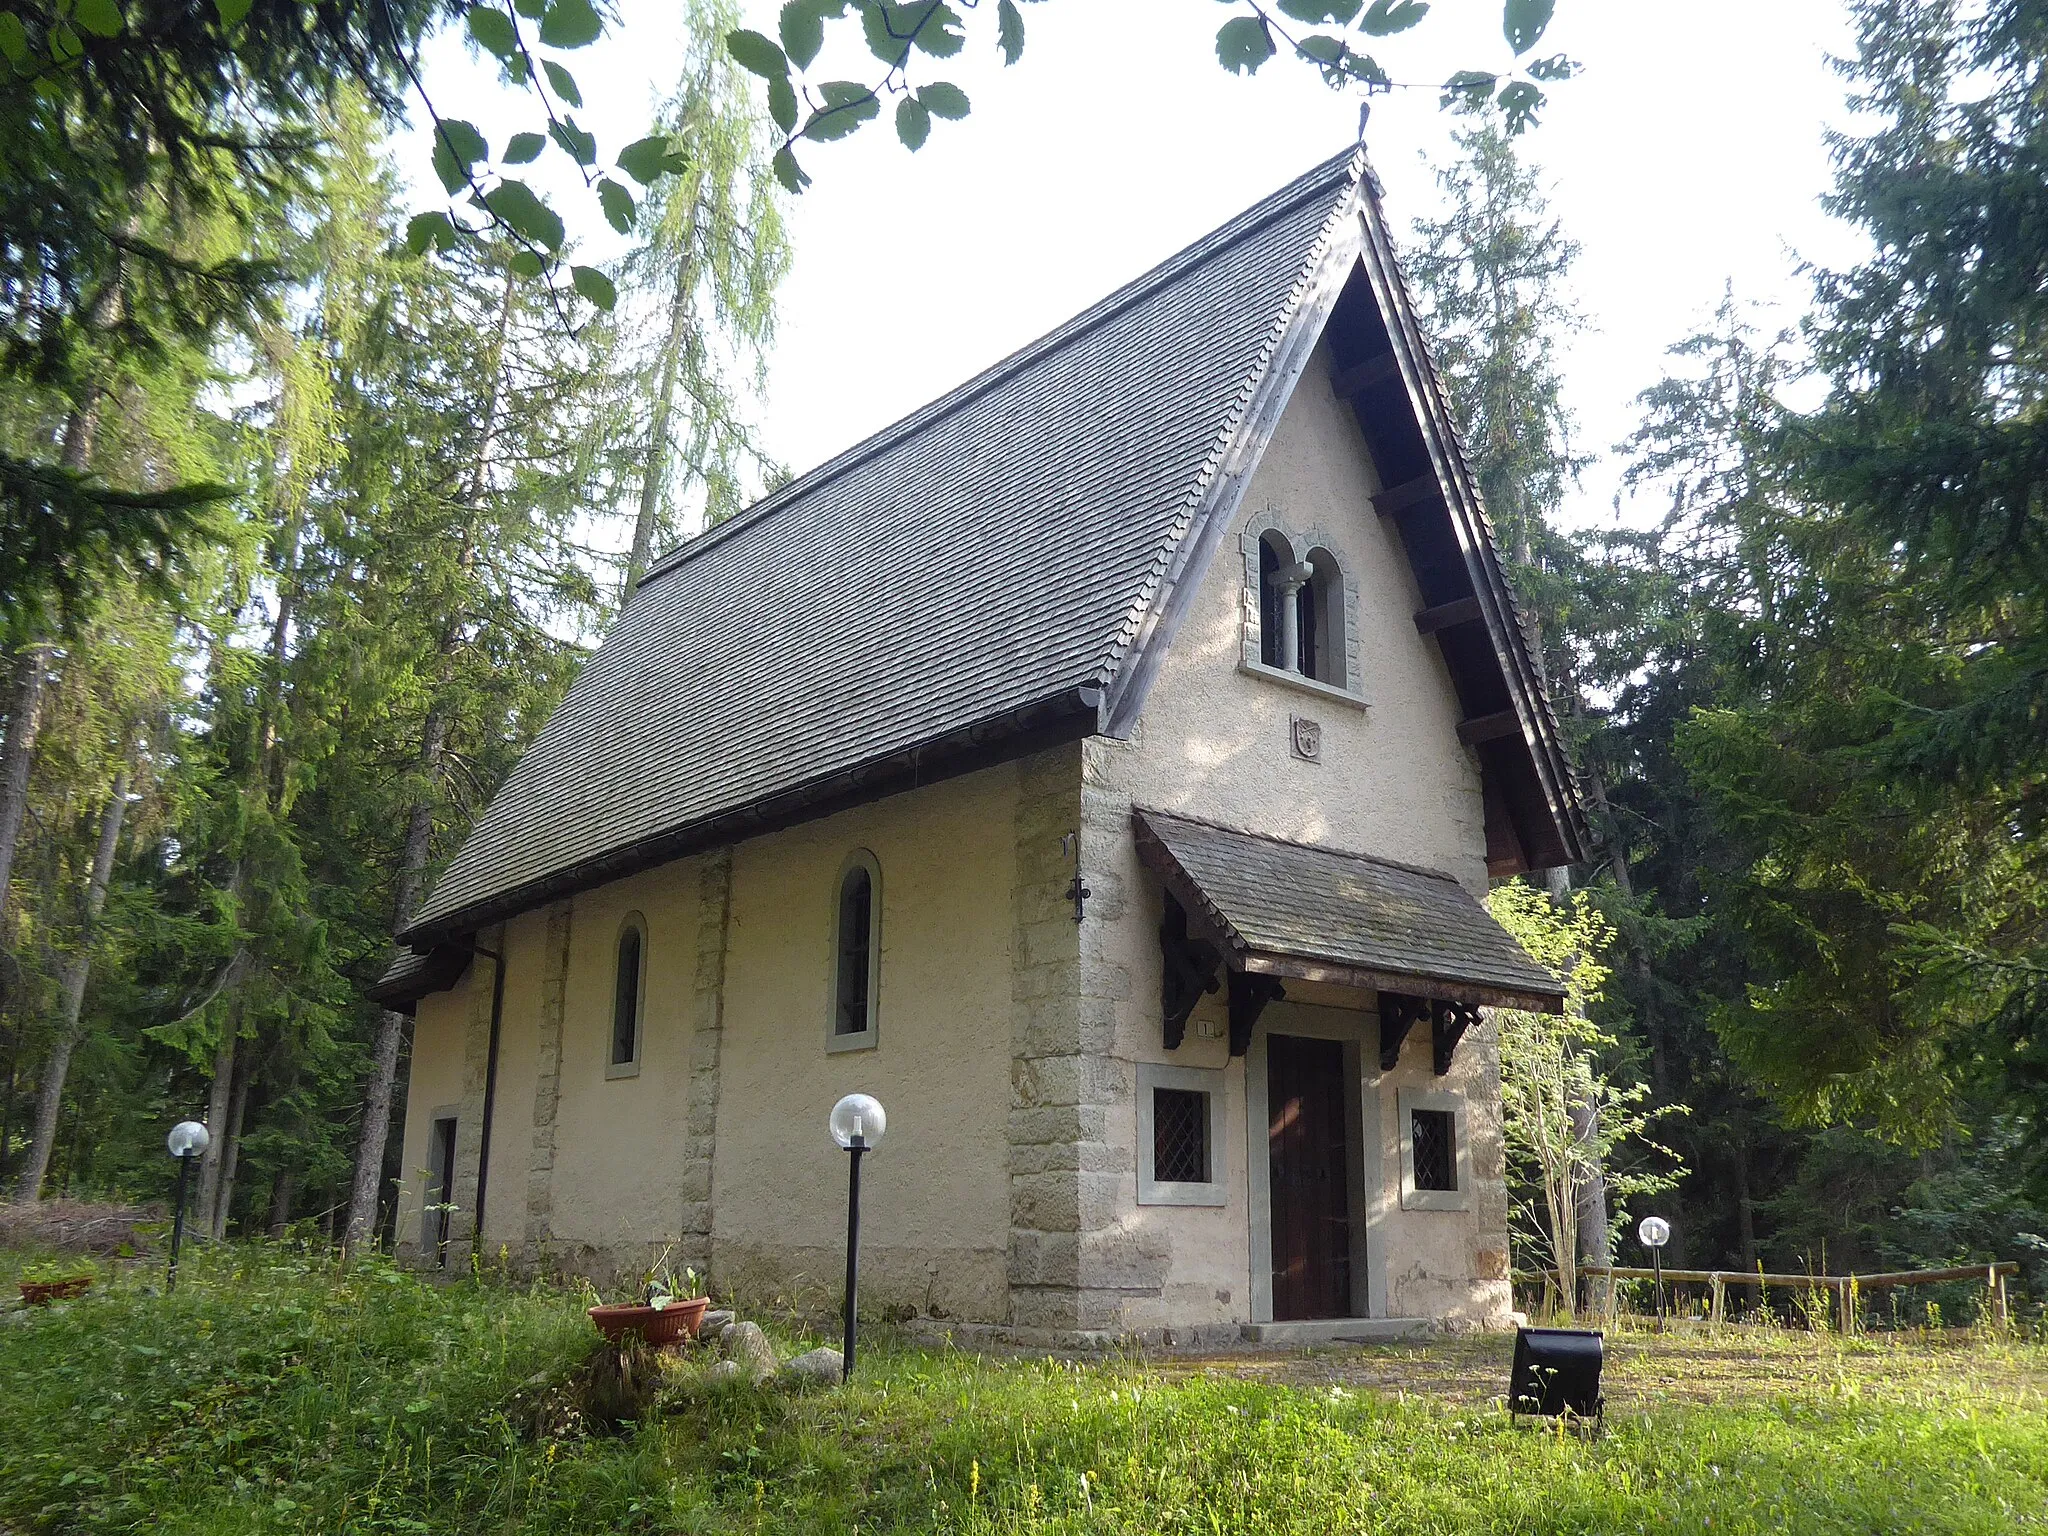 Photo showing: Villini dell'Alpe (Ruffré-Mendola, Trentino, Italy), Santa Maria Assunta church